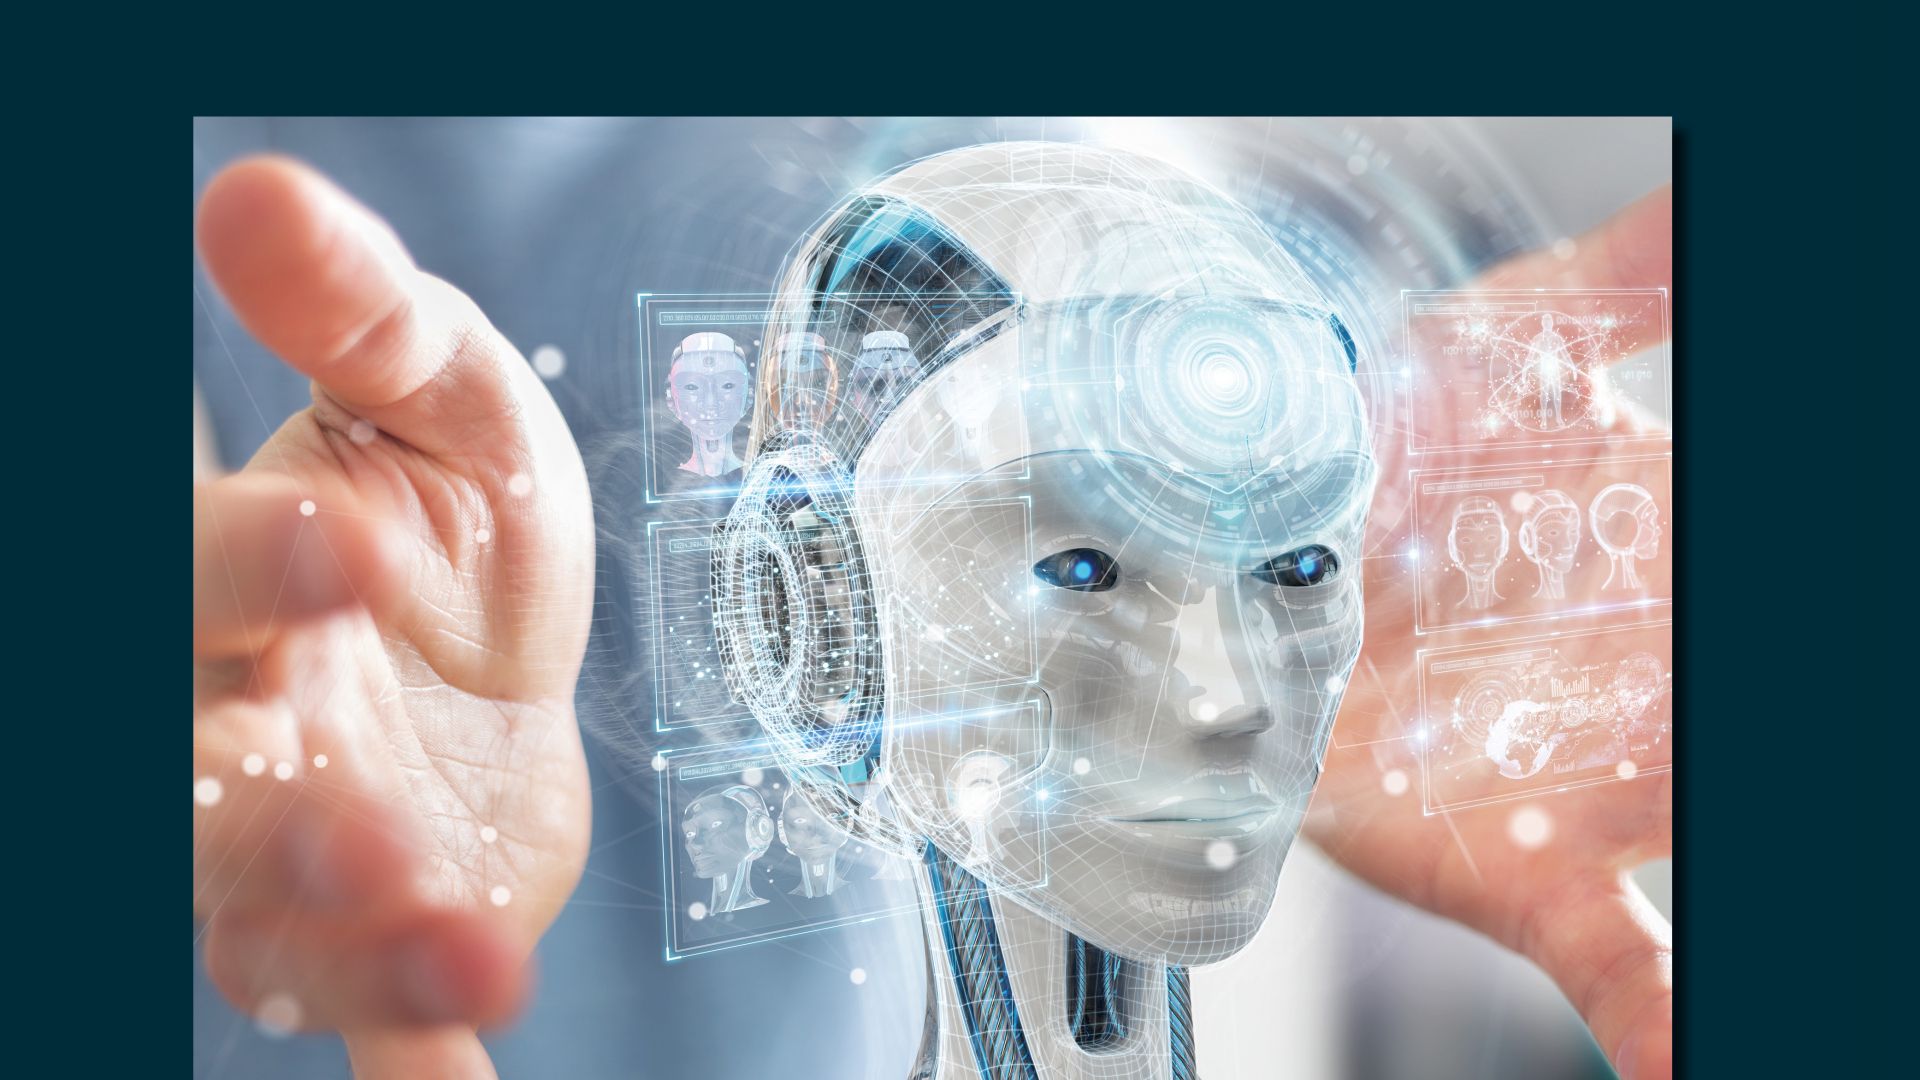 Тенденции развития искусственного интеллекта. Искусственный интеллект. ИСКУСТВЕННЫЙИ нтеллект. Технологии будущего. Человек и технологии.